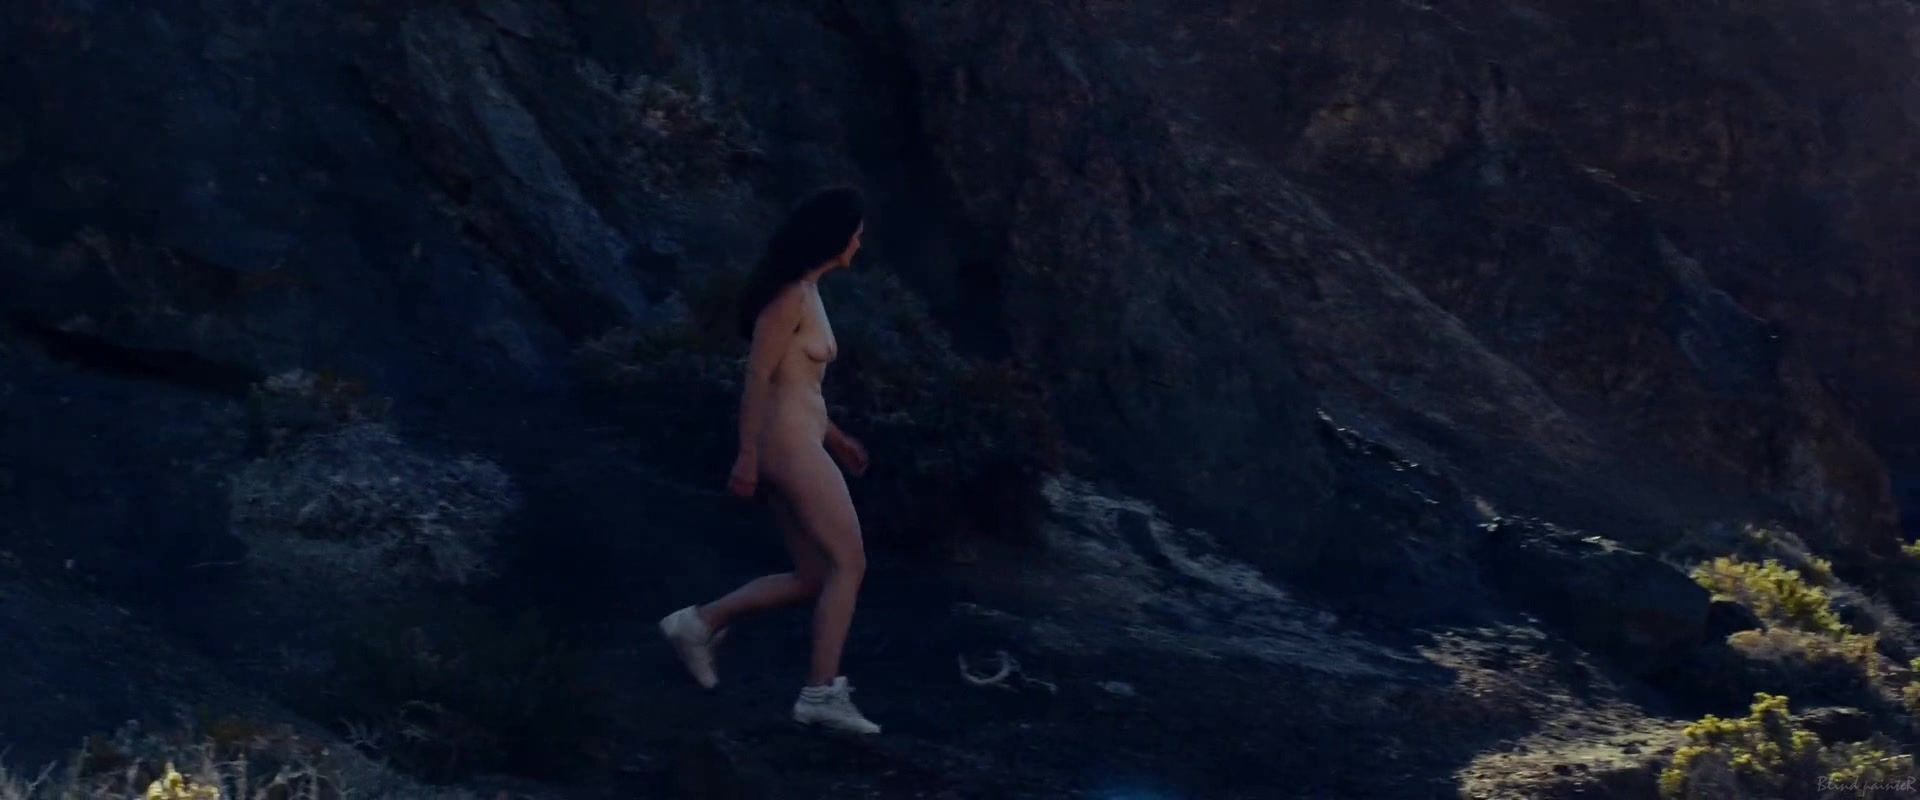 Girl Fuck Gaby Hoffmann nude - Crystal Fairy (2013) Puto - 1